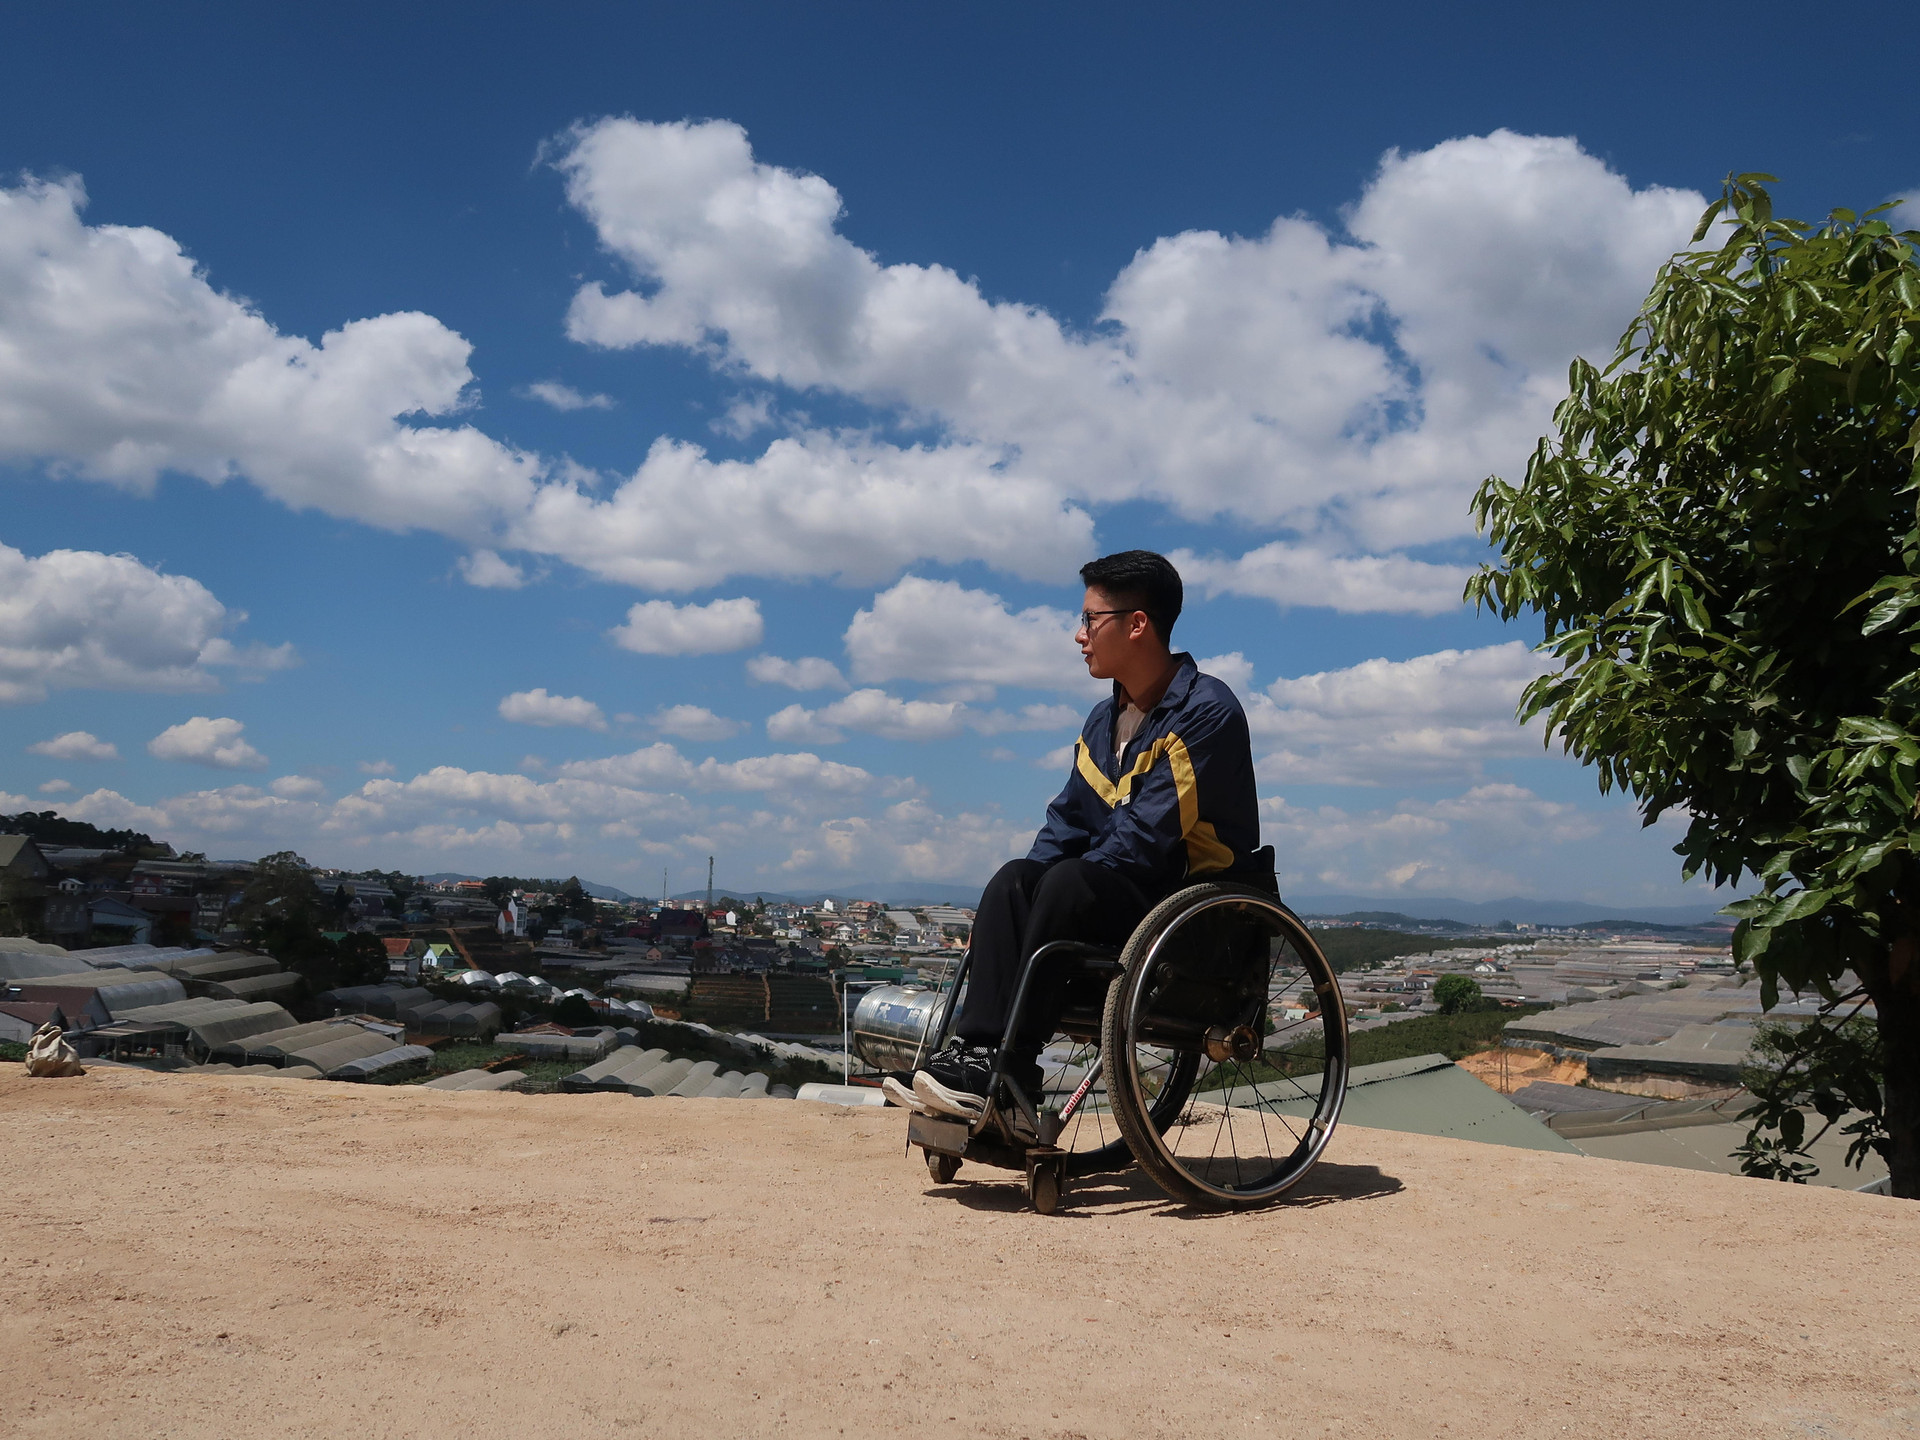 Chàng trai đi phượt bằng xe lăn, chinh phục những con đèo hiểm trở nhất Việt Nam: Mất 10 năm định nghĩa hai từ “tự do” bằng cách chưa ai từng làm! - Ảnh 23.